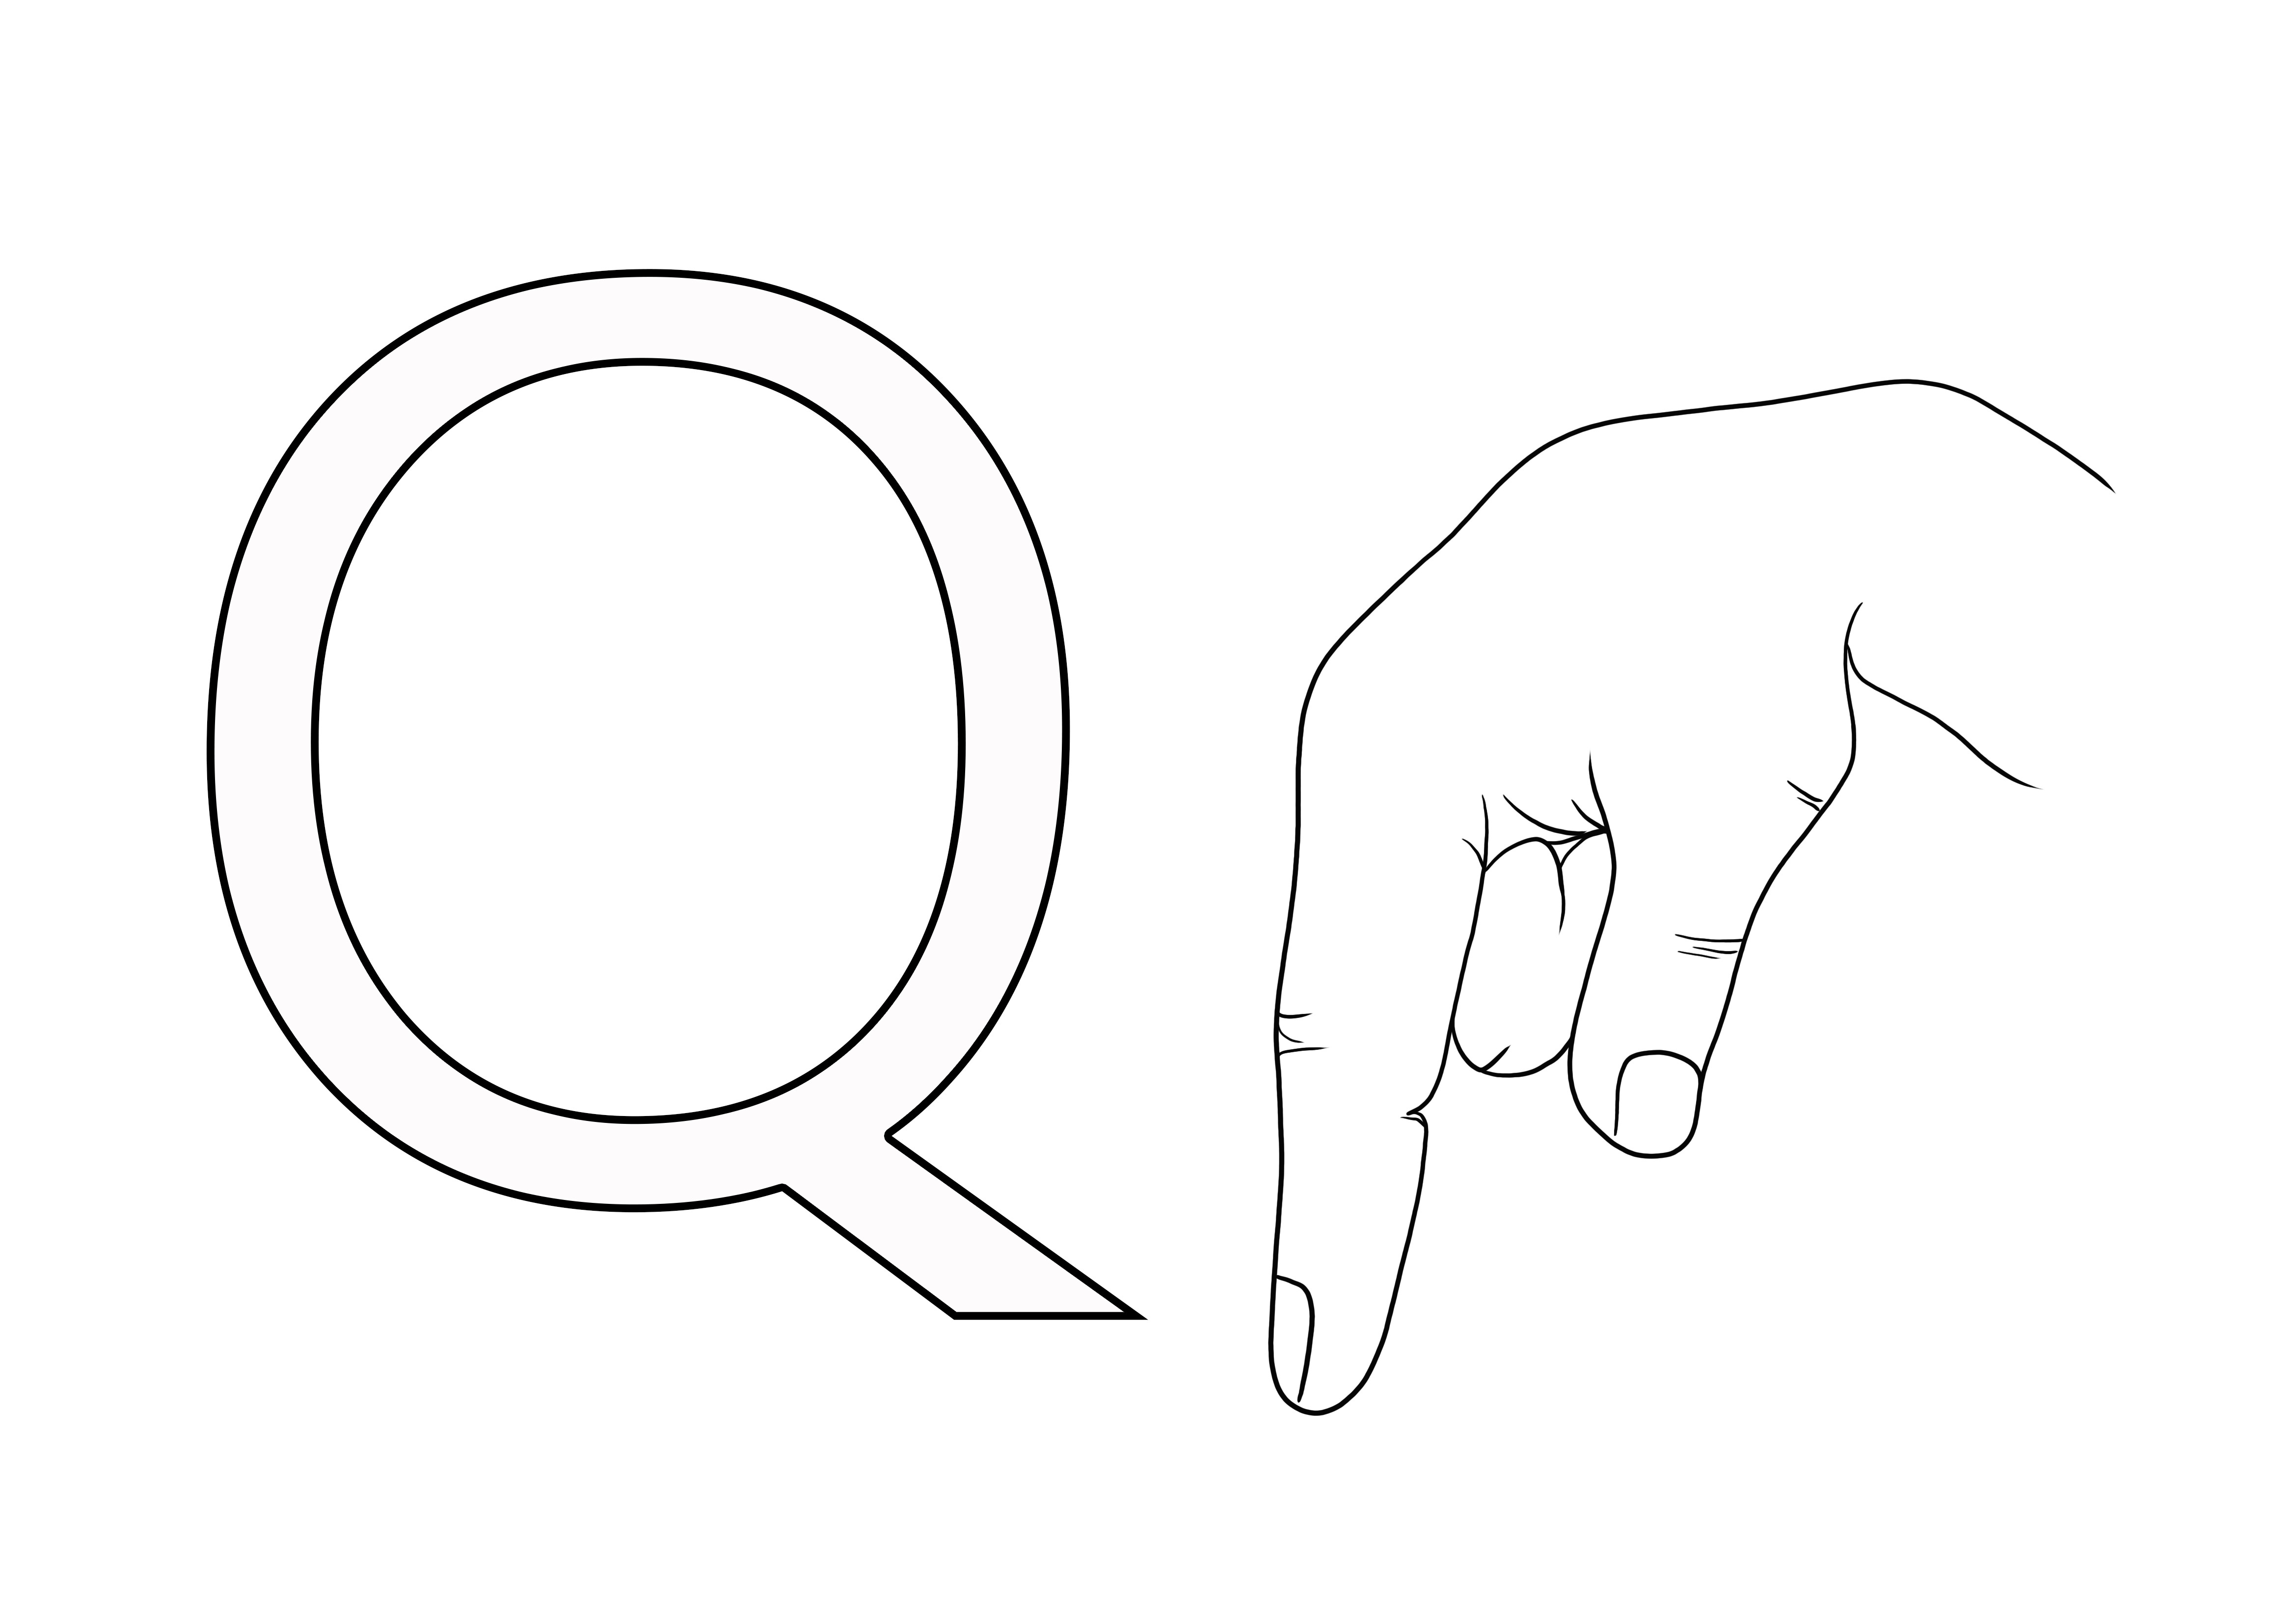 ASL Sign Language Letter Q imprimible gratis para colorear para que los niños aprendan fácilmente el ASL